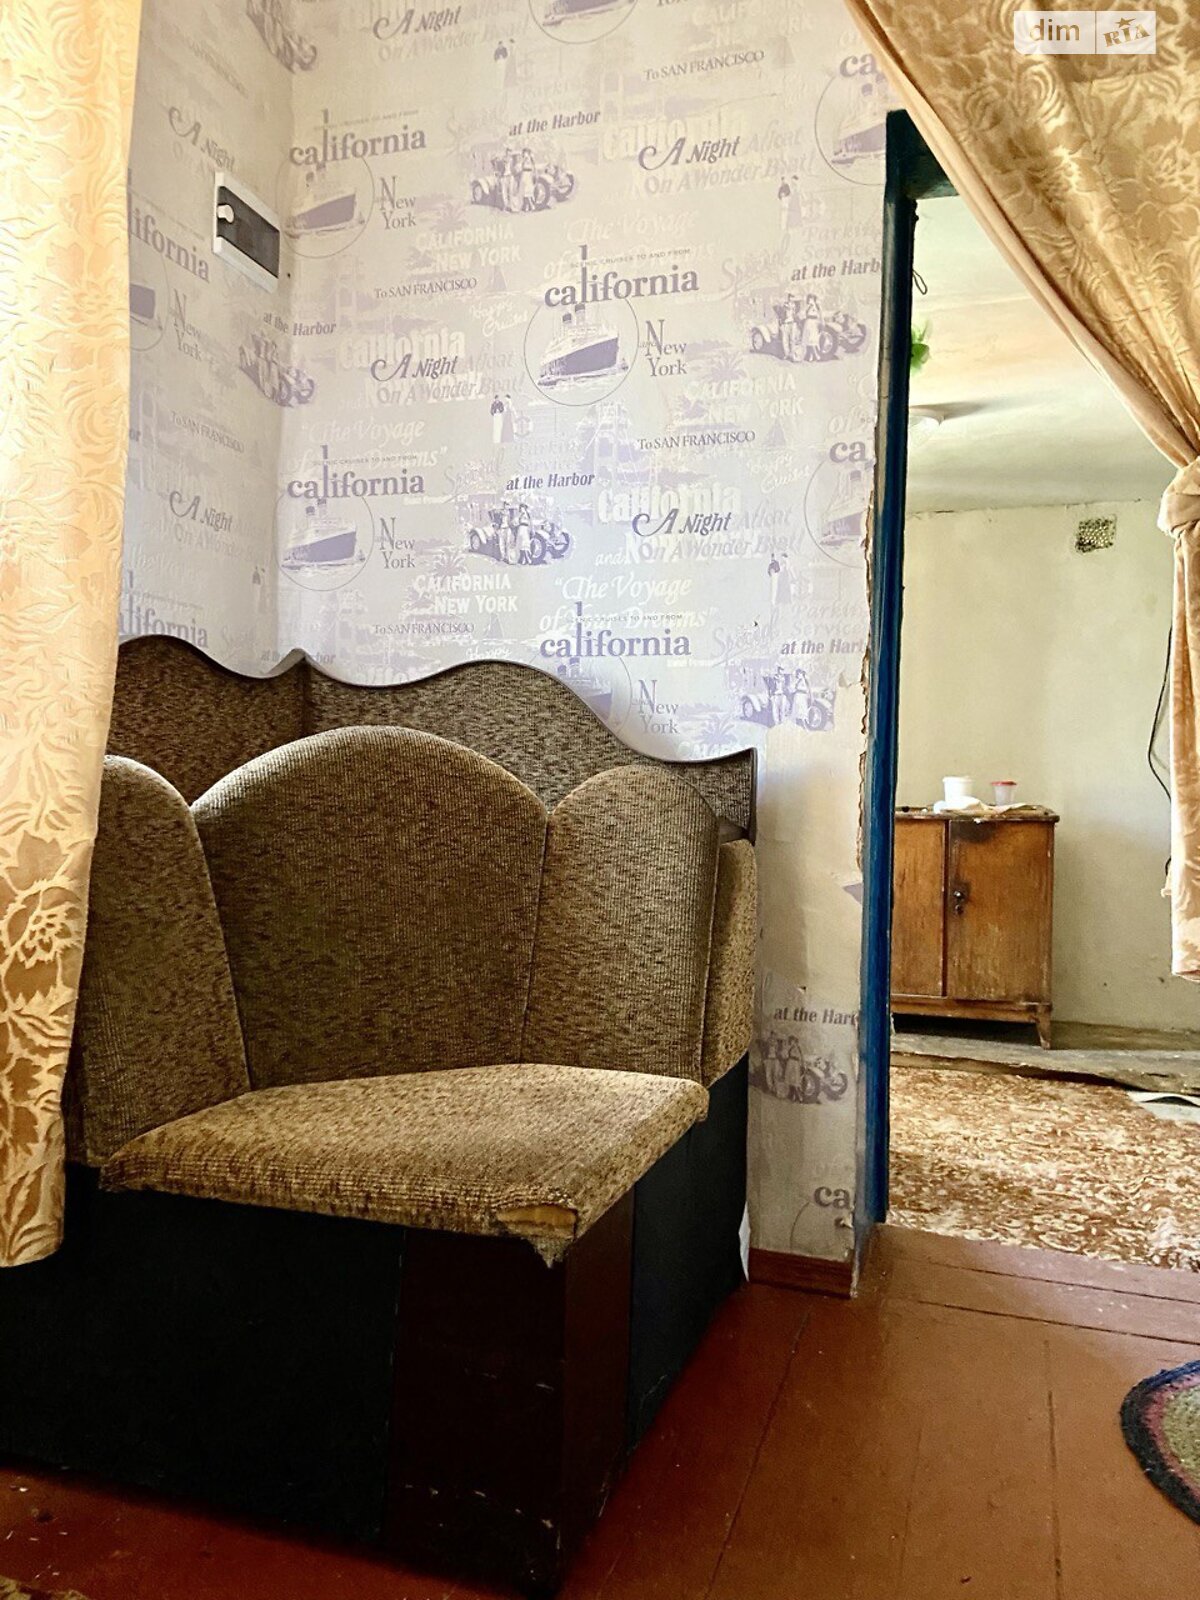 Продажа части дома в Чернигове, улица Партизанская, район Боевая, 2 комнаты фото 1